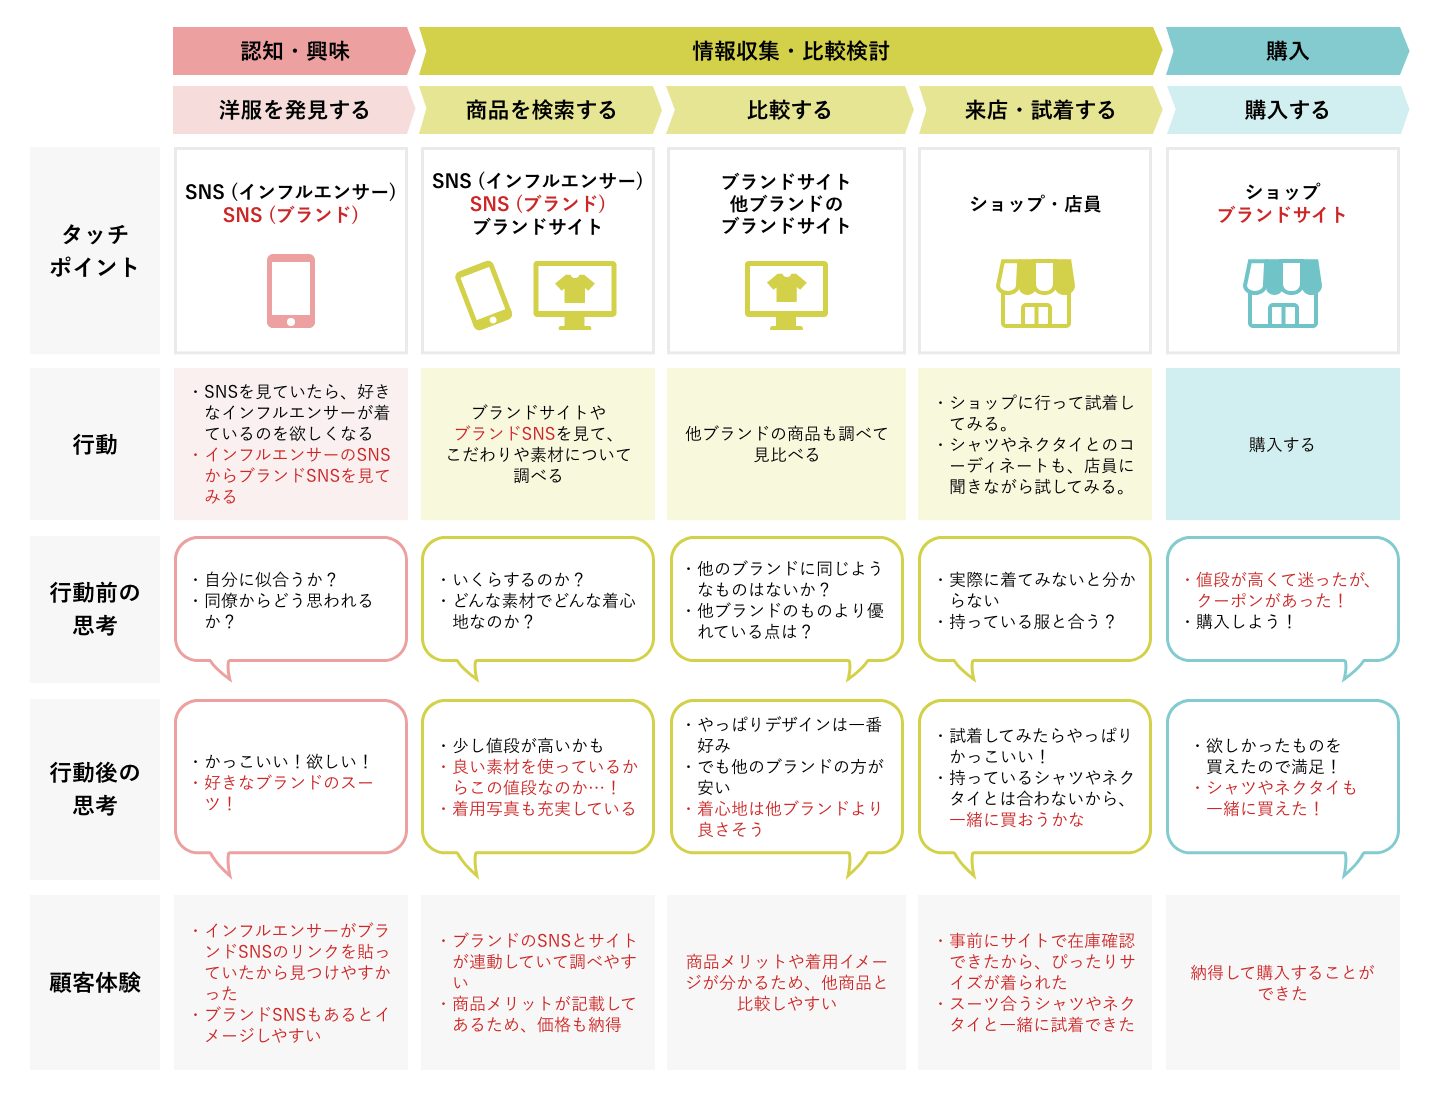 To-Beカスタマージャーニーマップ